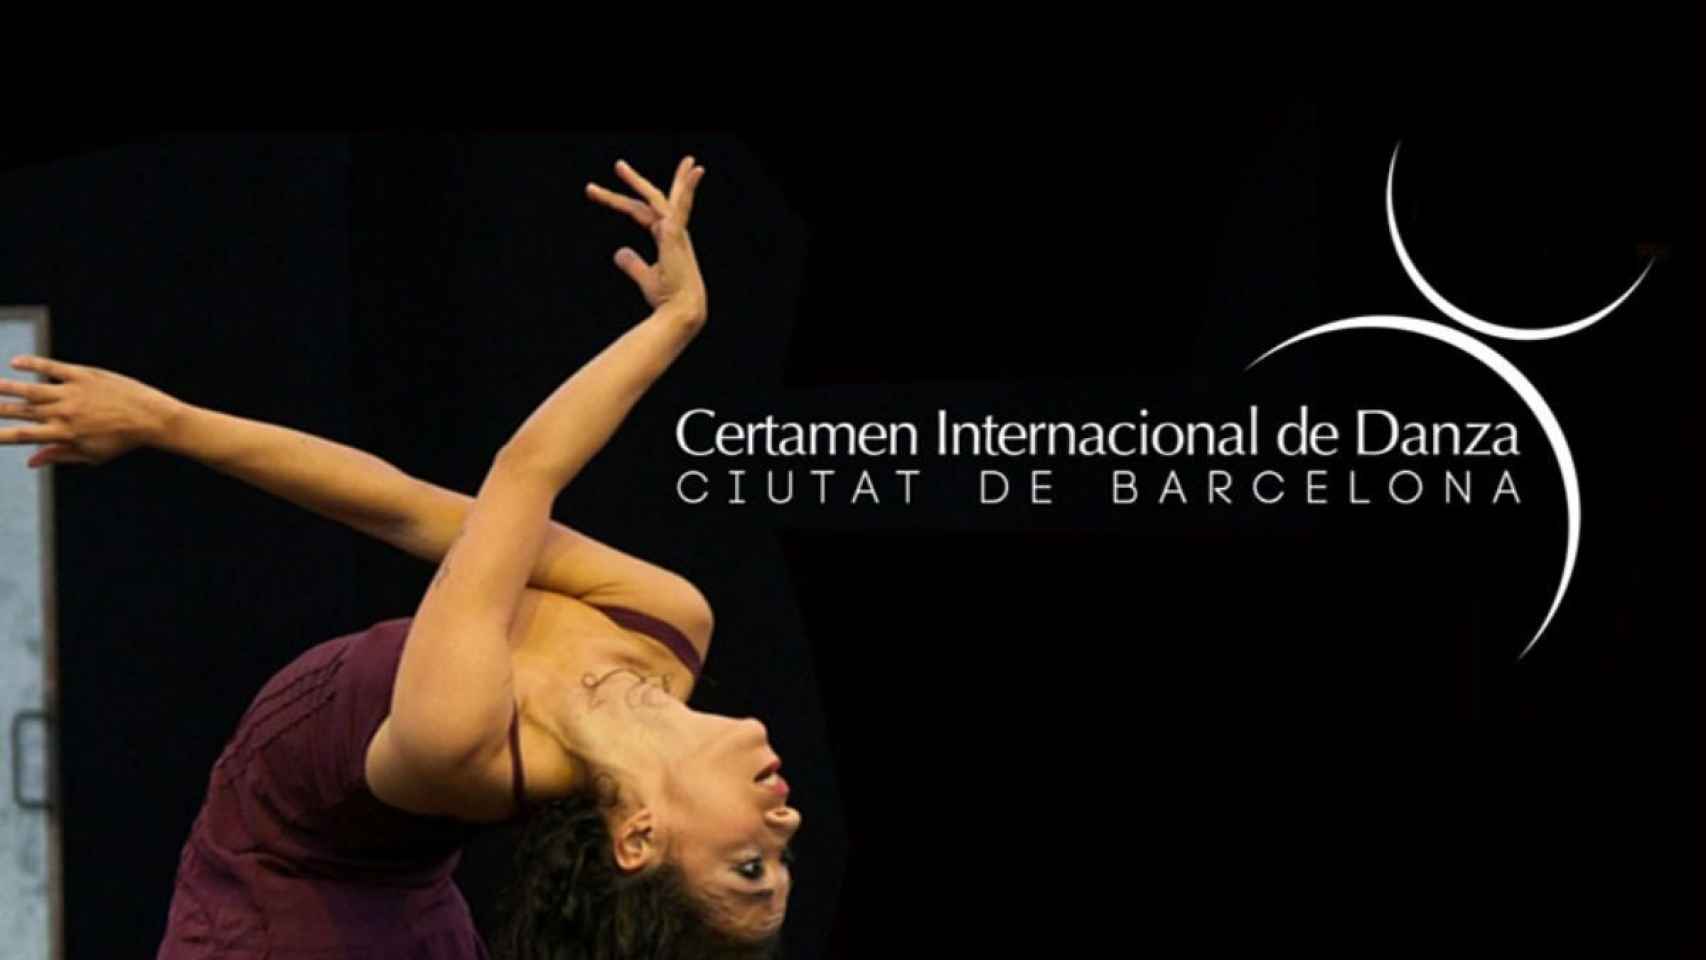 VIII Certamen Internacional de Danza Ciutat de Barcelona / CERTAMEN INTERNACIONAL DE DANZA CIUTAT